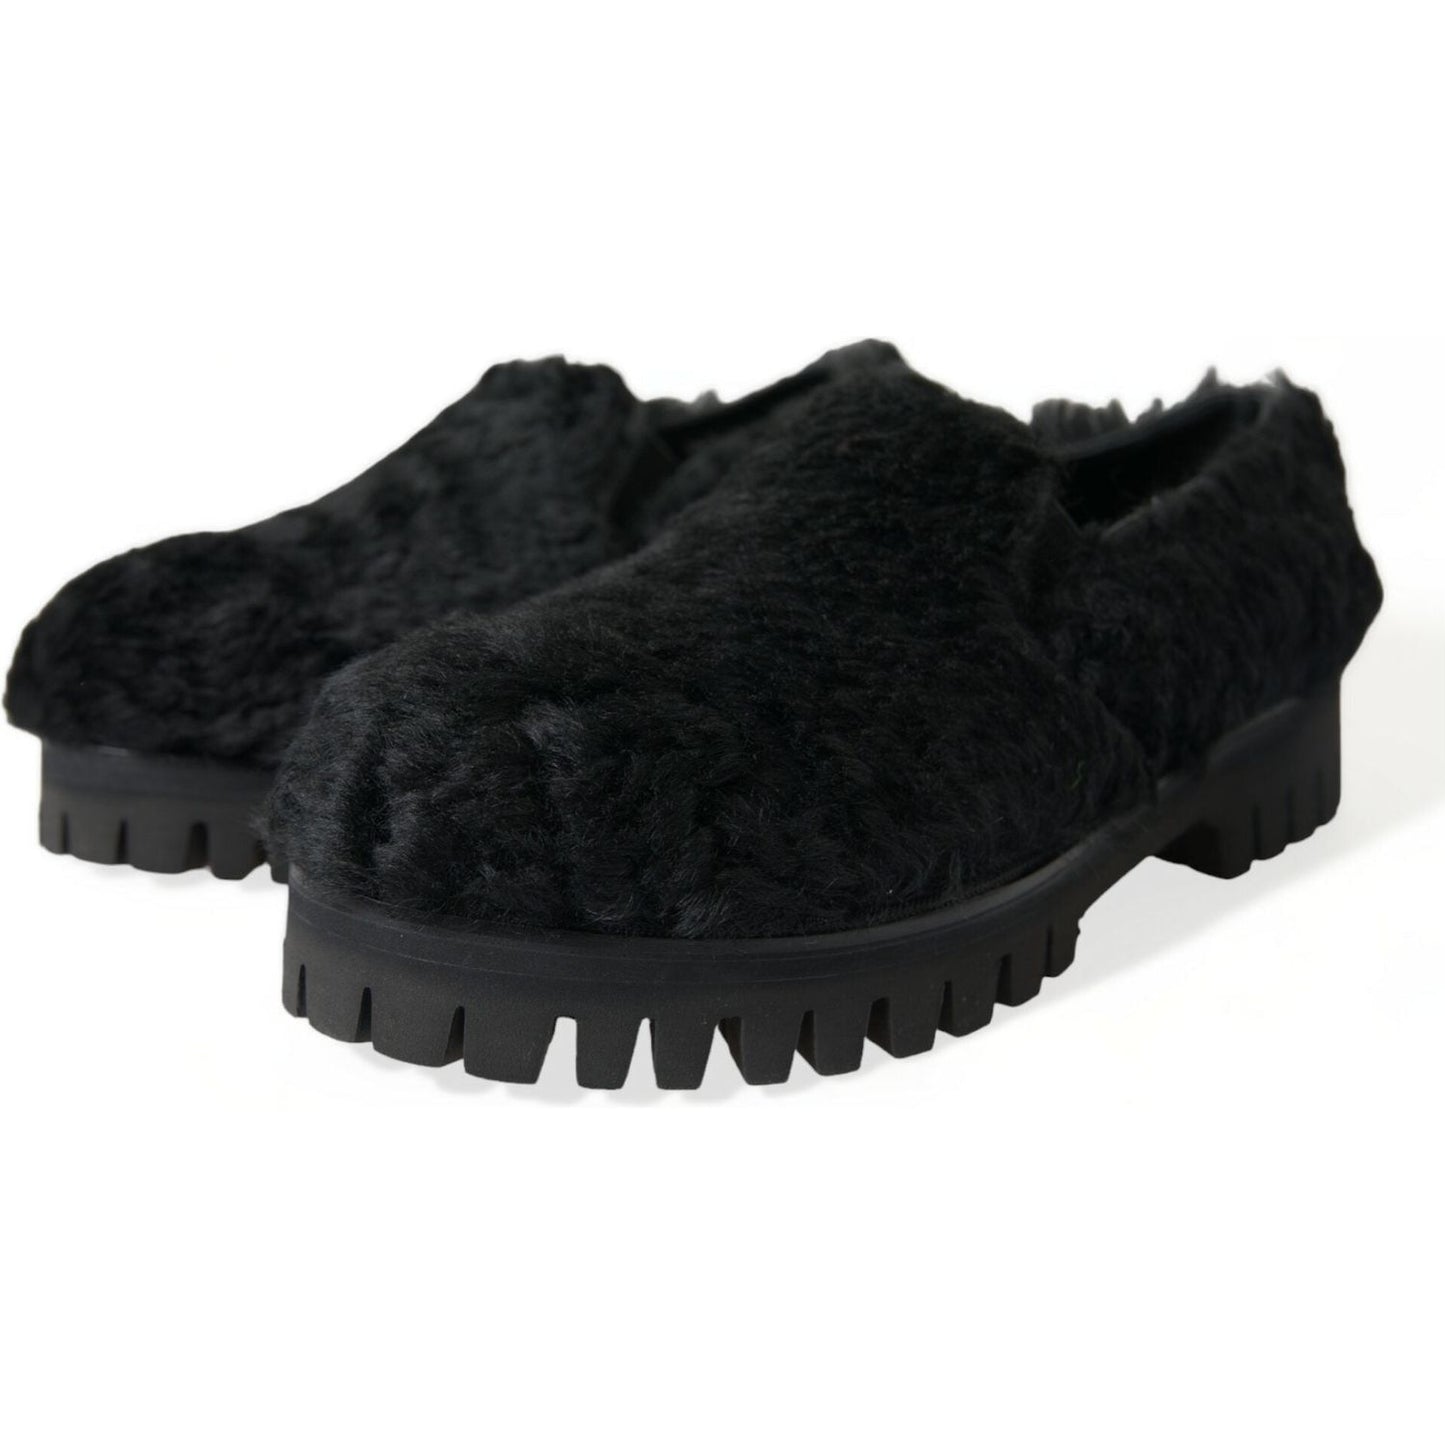 Dolce & Gabbana Elegant Black Fur Slip On Loafers for Men black-fur-leather-slippers-dress-shoes